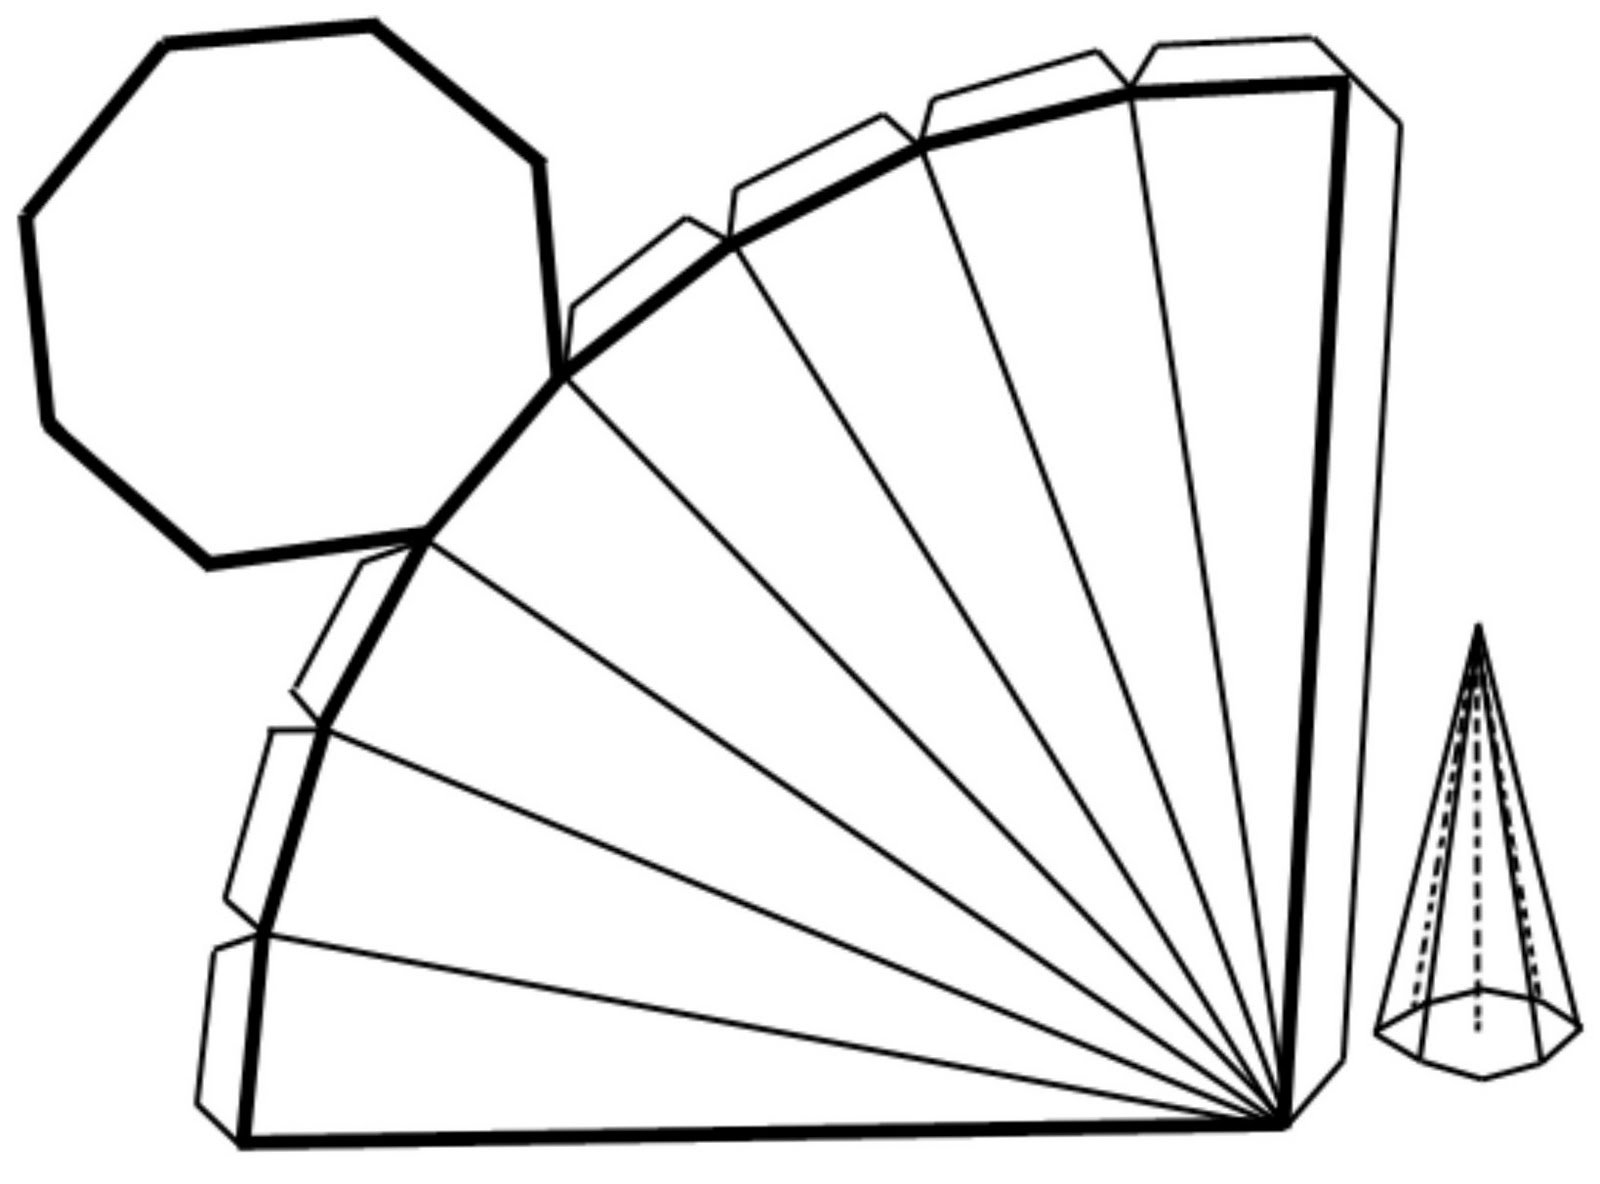 Развёртка семиугольной пирамиды